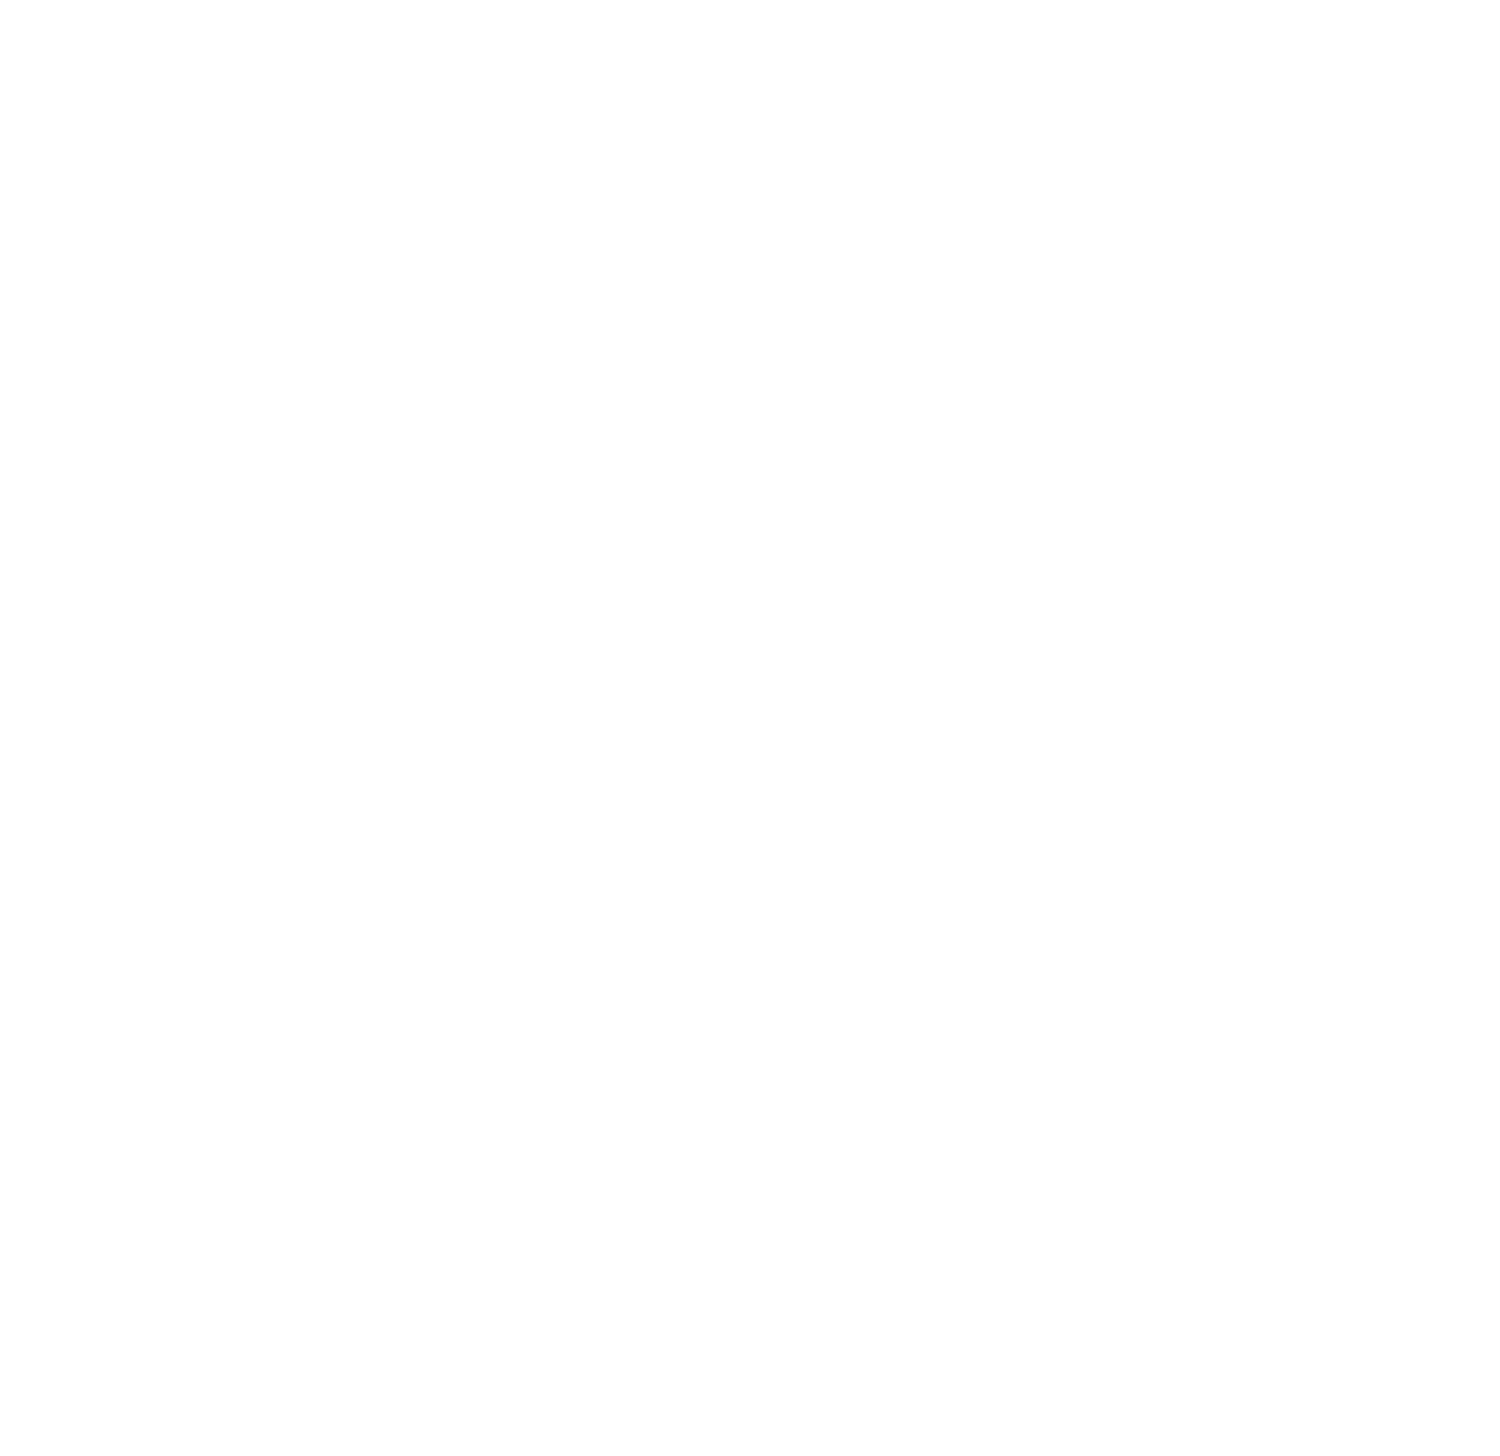 Friends of St David's